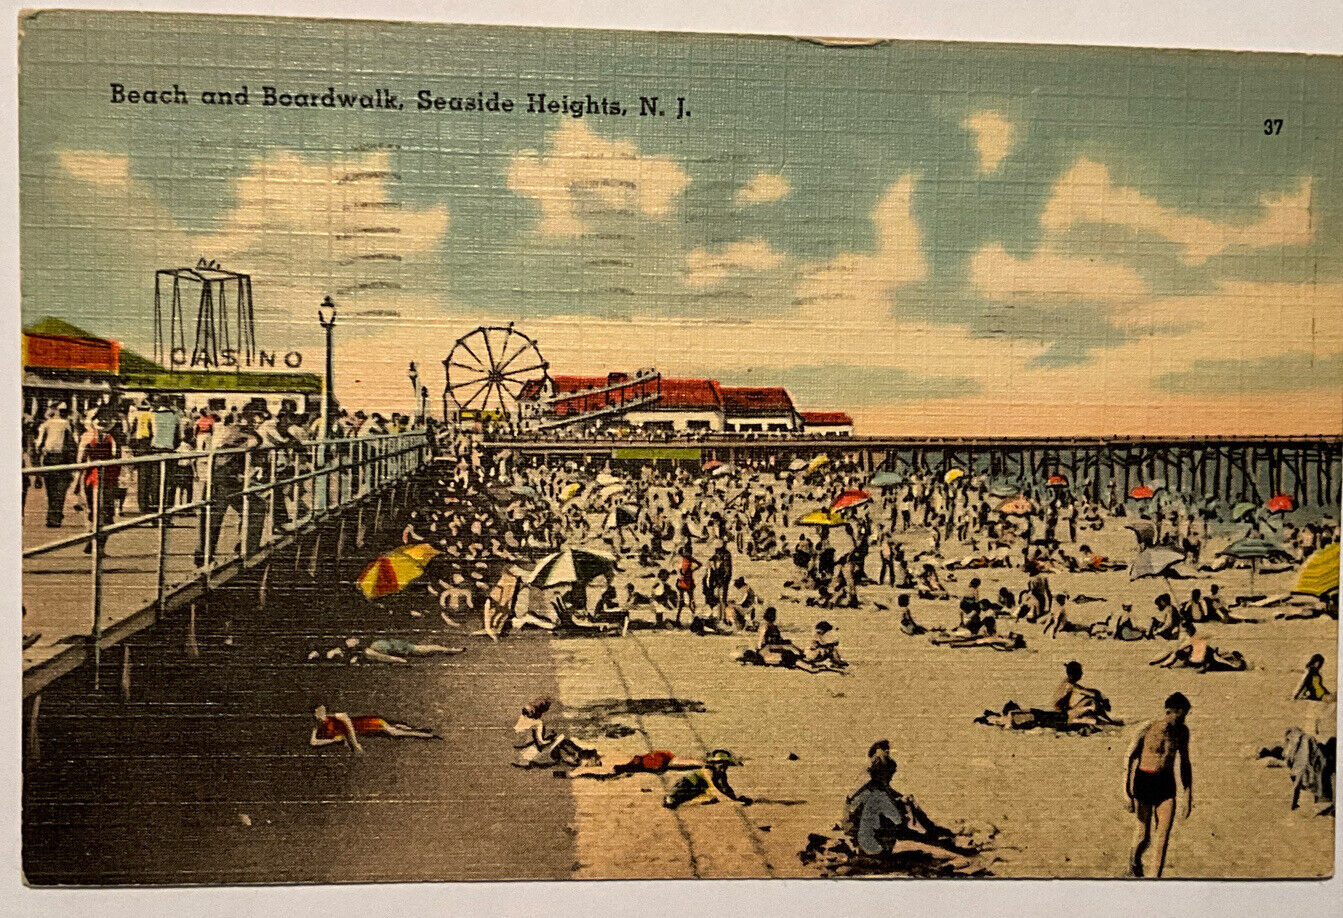 Seaside Heights N J , Beach And Boardwalk  Looking North Towards Casino Pier1952